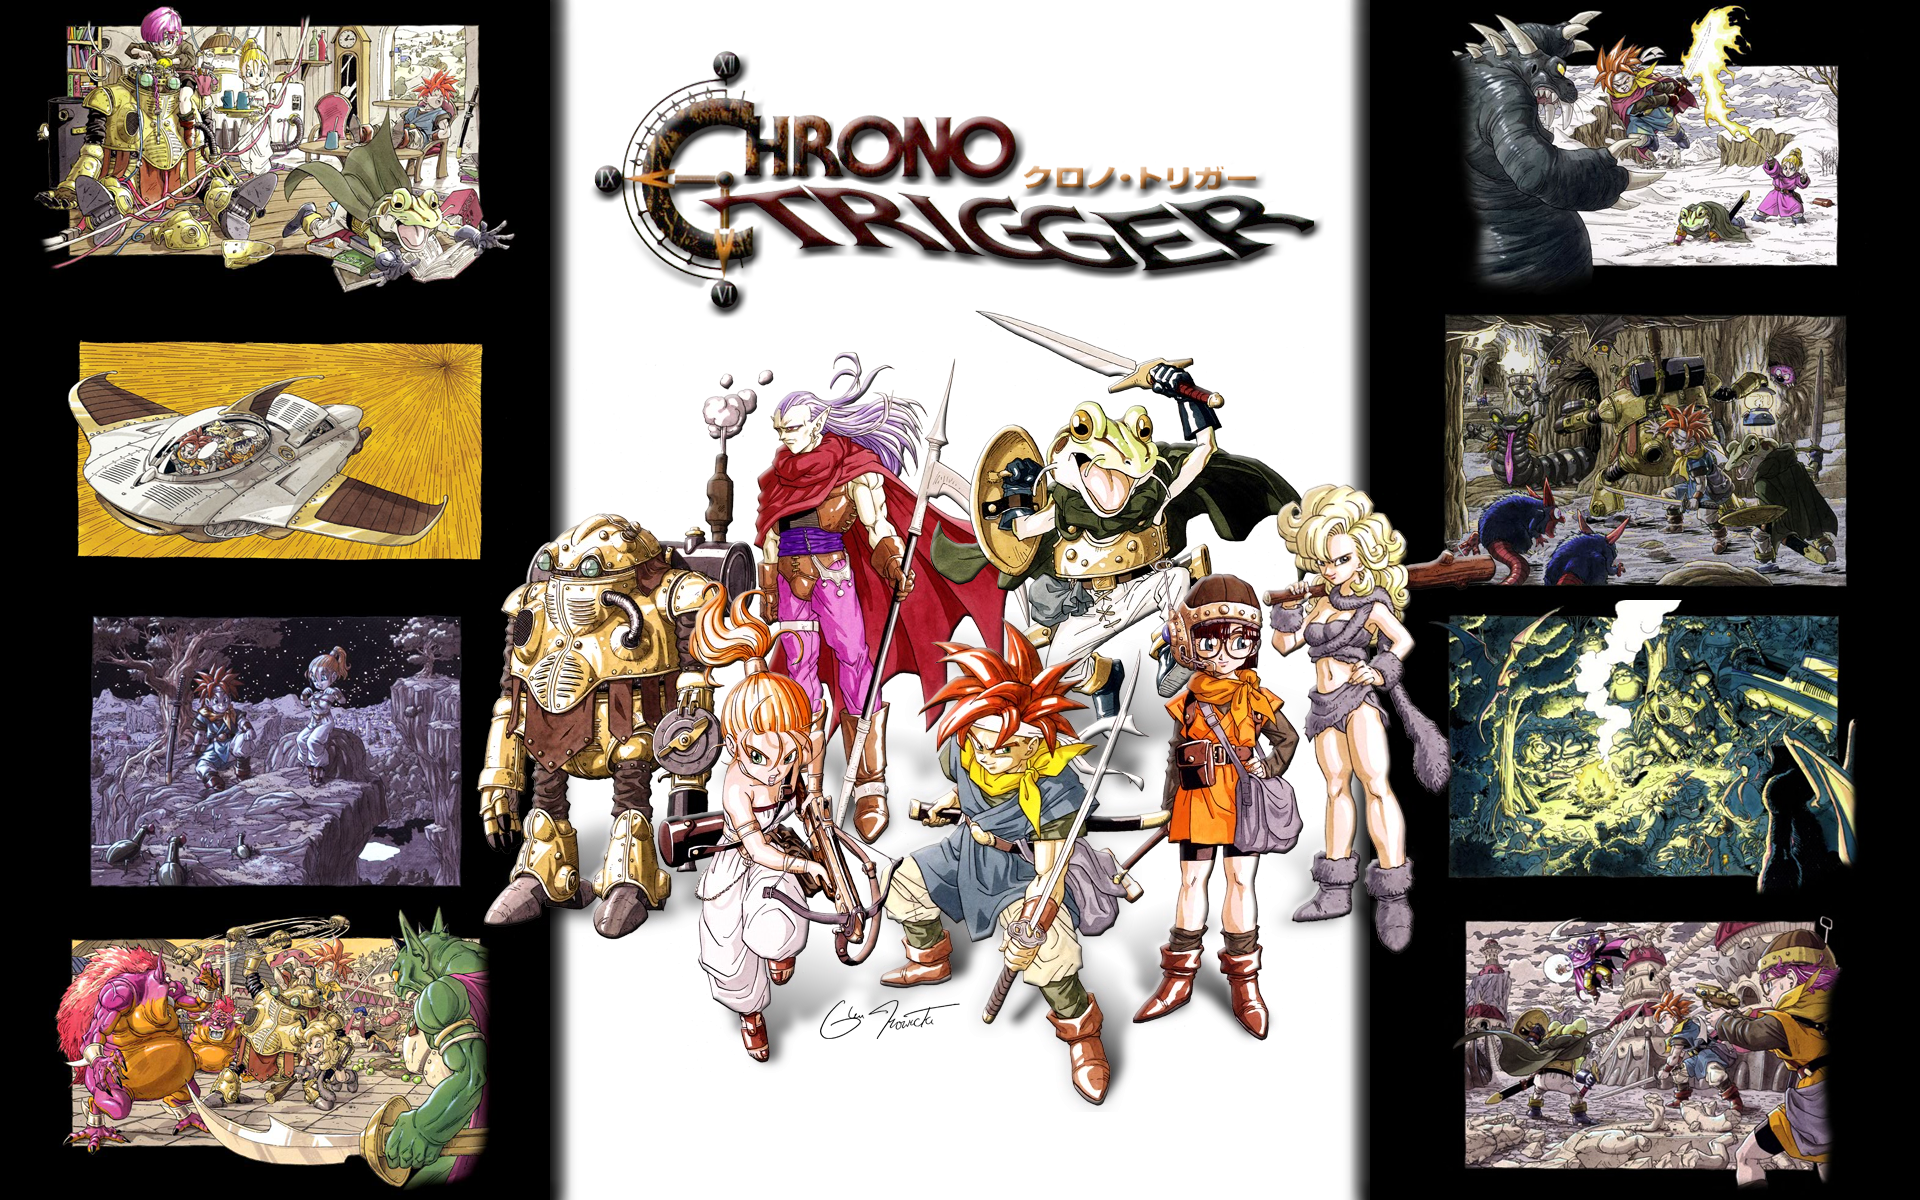 Chrono Trigger Squaresoft Retro Super Nintendo SNES RPG Videogame Review